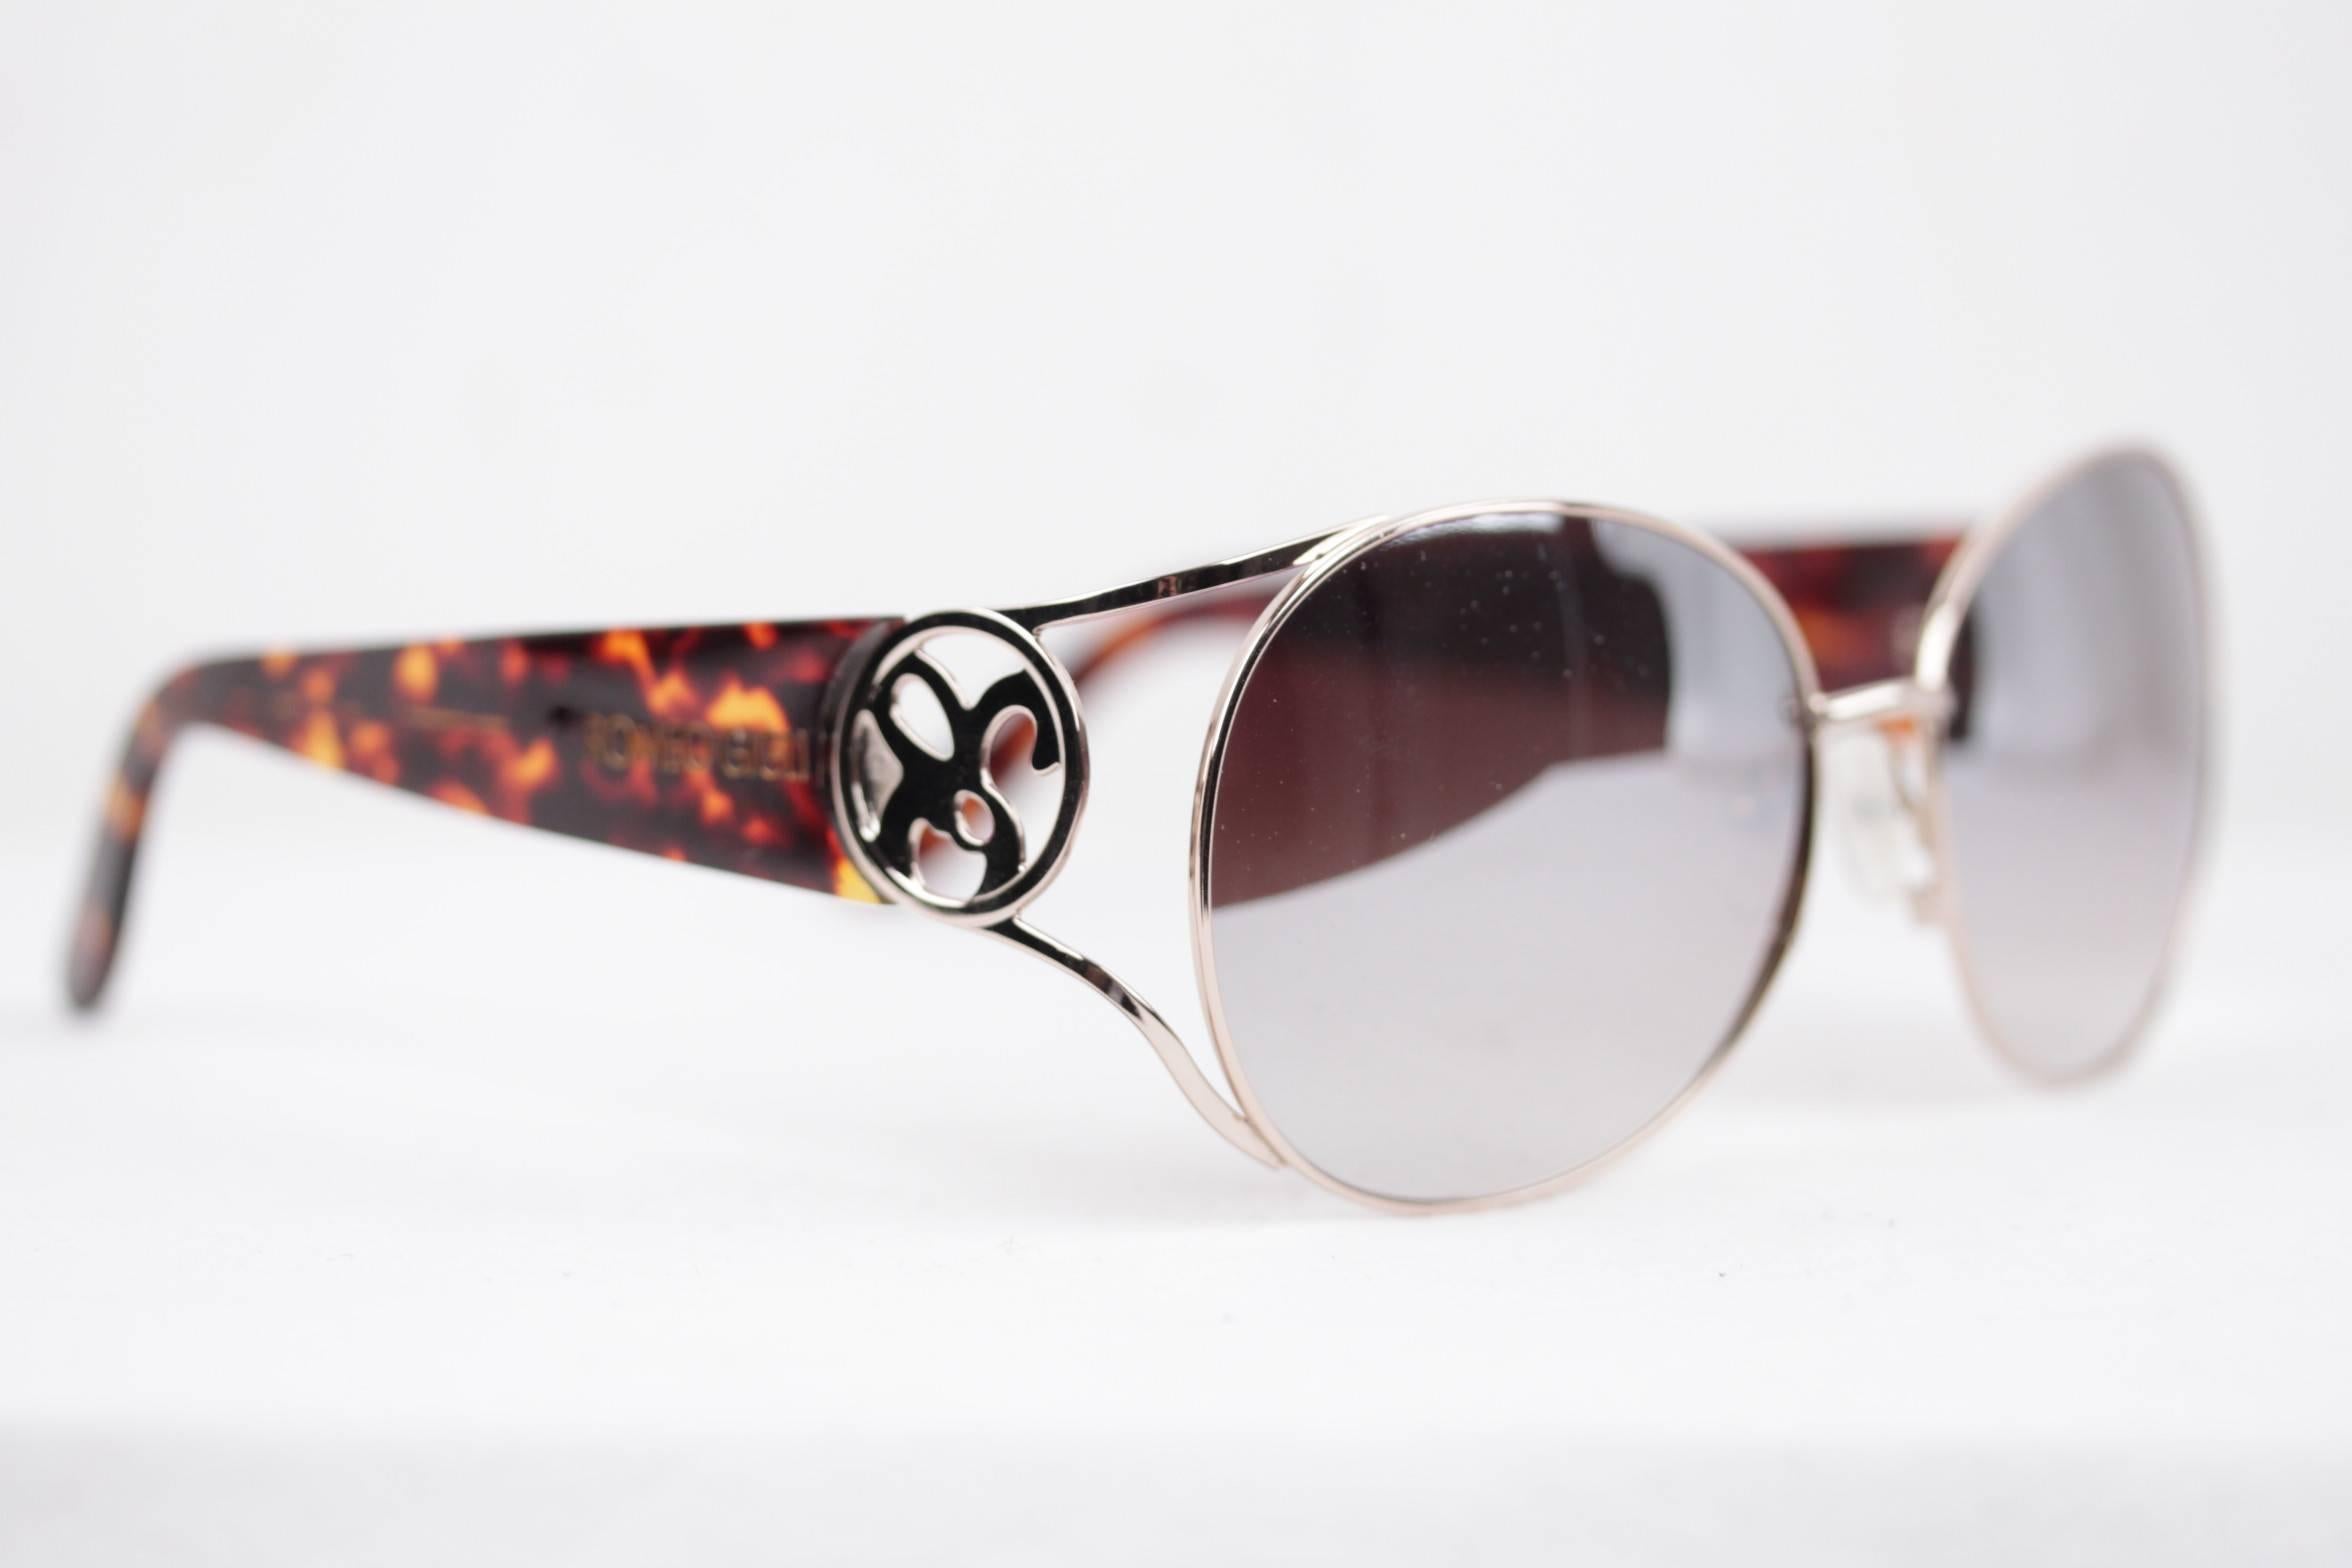 Gray ROMEO GIGLI silver/brown oversized Sunglasses RGG4/S col.D 61/15 135 mirror lens